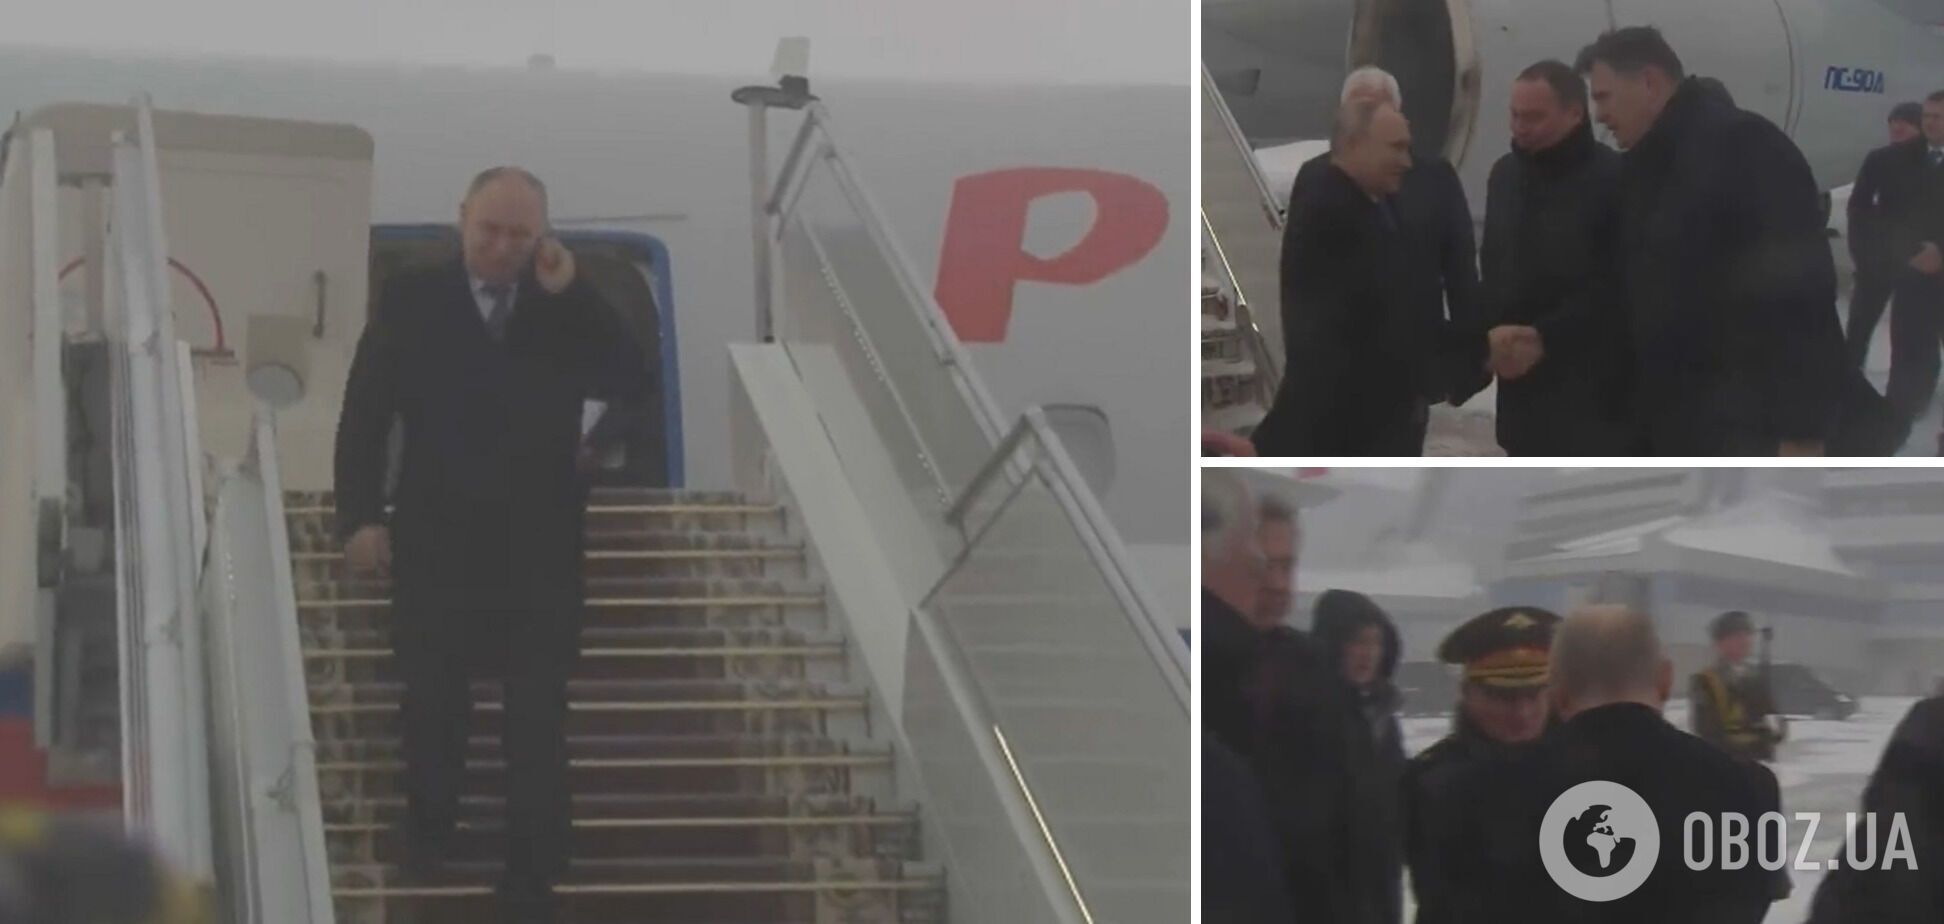 Ни 'особого' чемодана, ни дистанции: сеть удивили кадры визита Путина в Минск на саммит ОДКБ. Видео